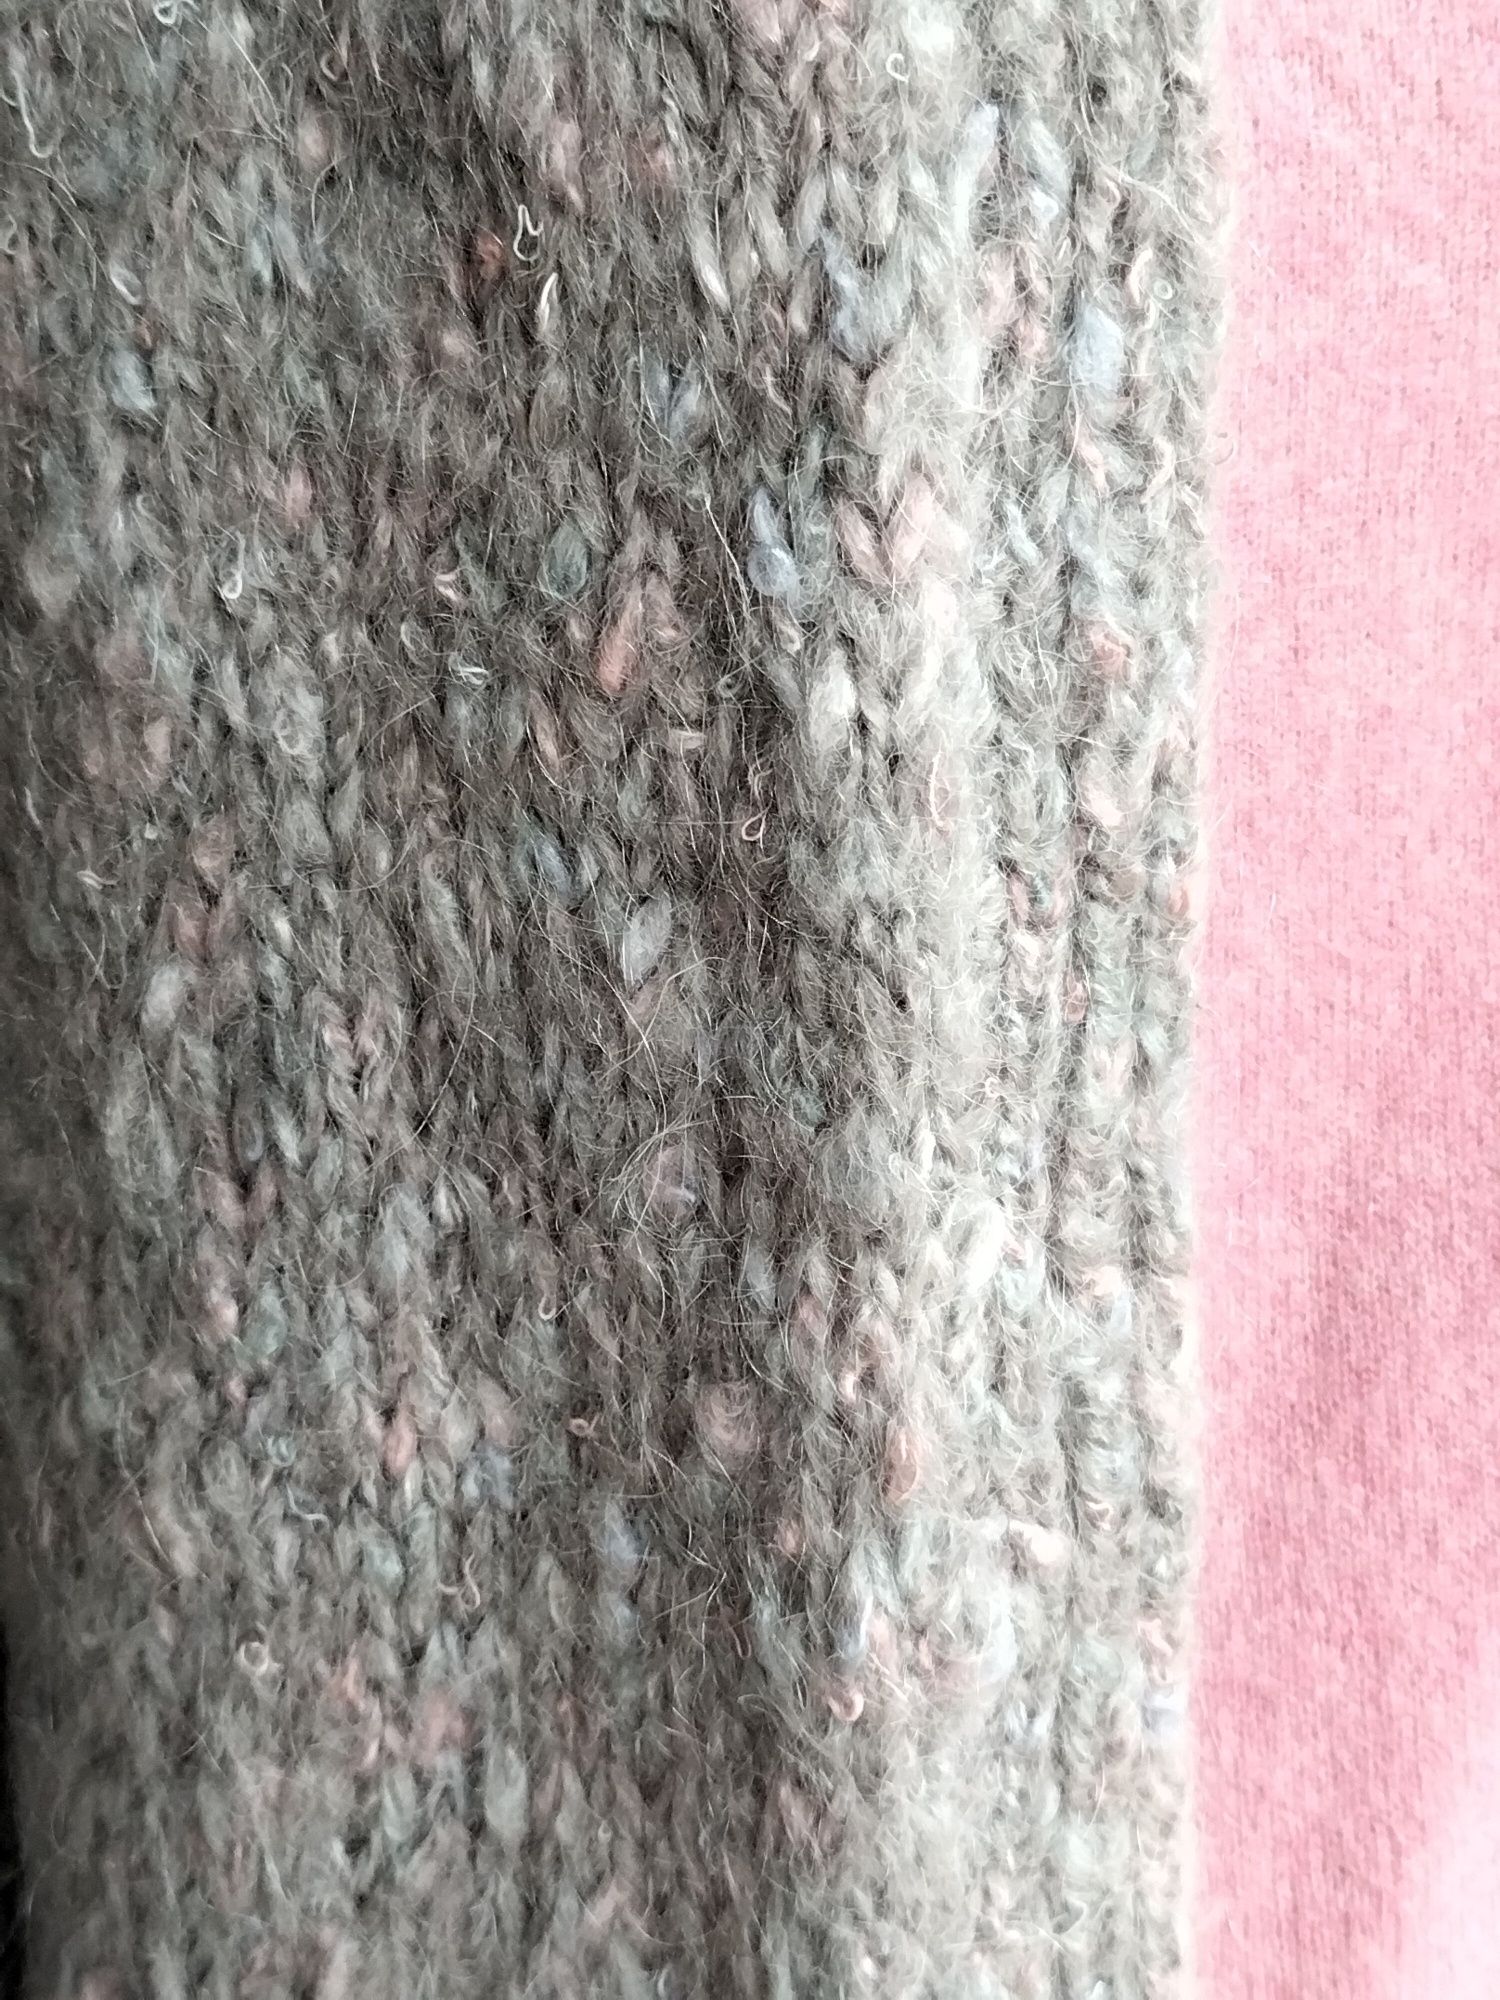 Długi gruby sweter, kardigan z kieszeniami handmade 42/ 44